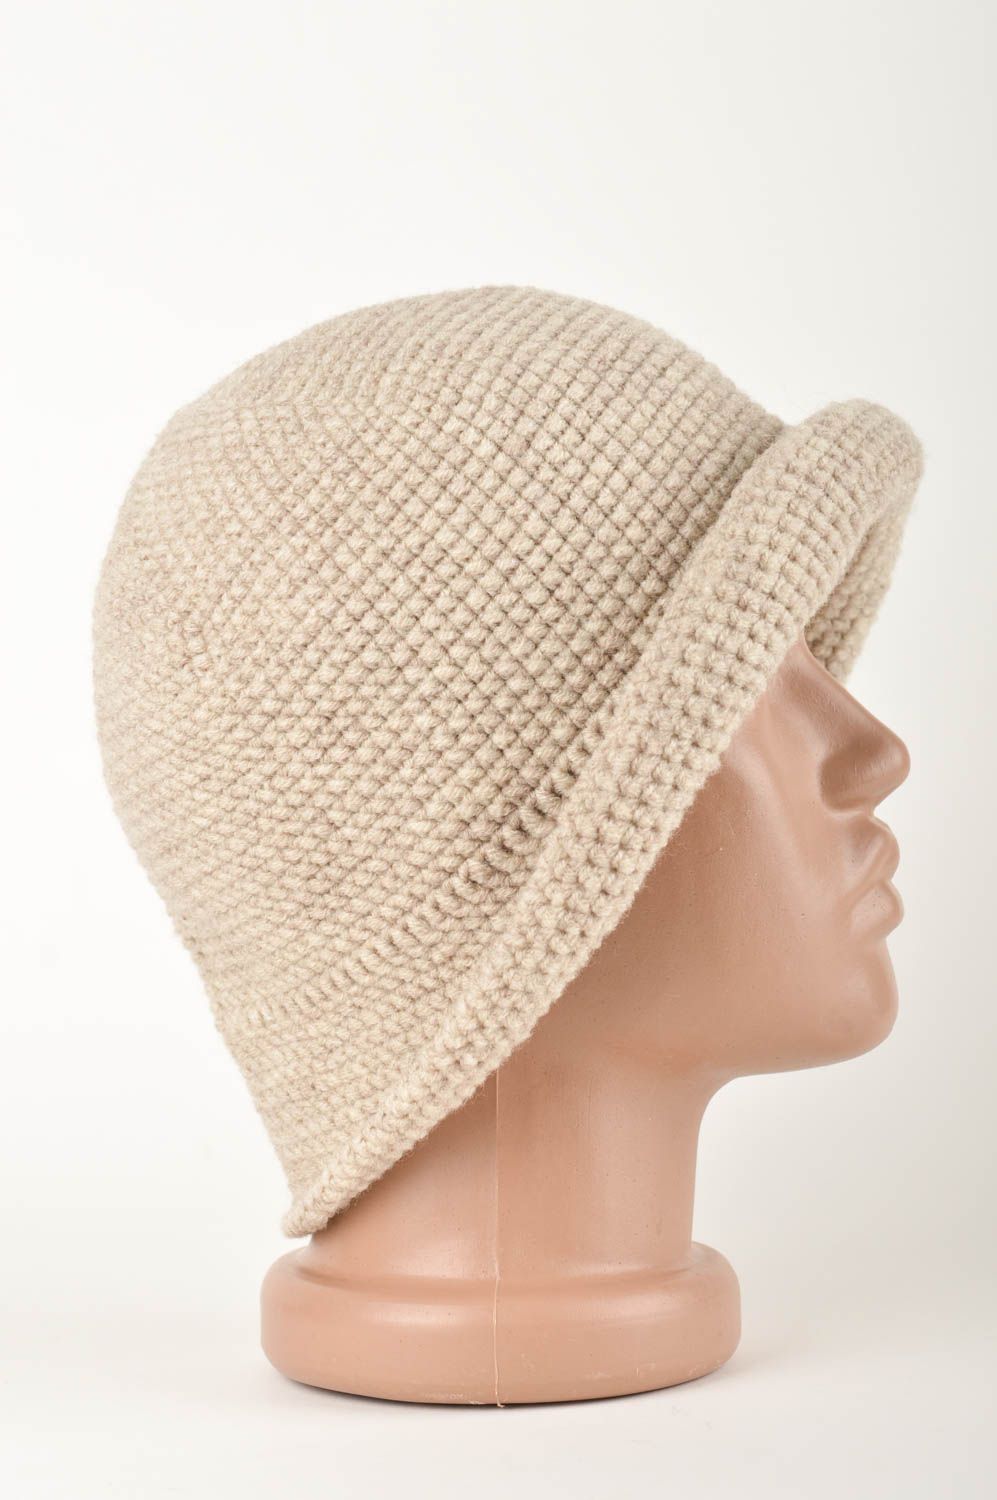 Handmade kopfbedeckung Damen Mütze aus Wolle modisches Accessoire beige schön foto 3